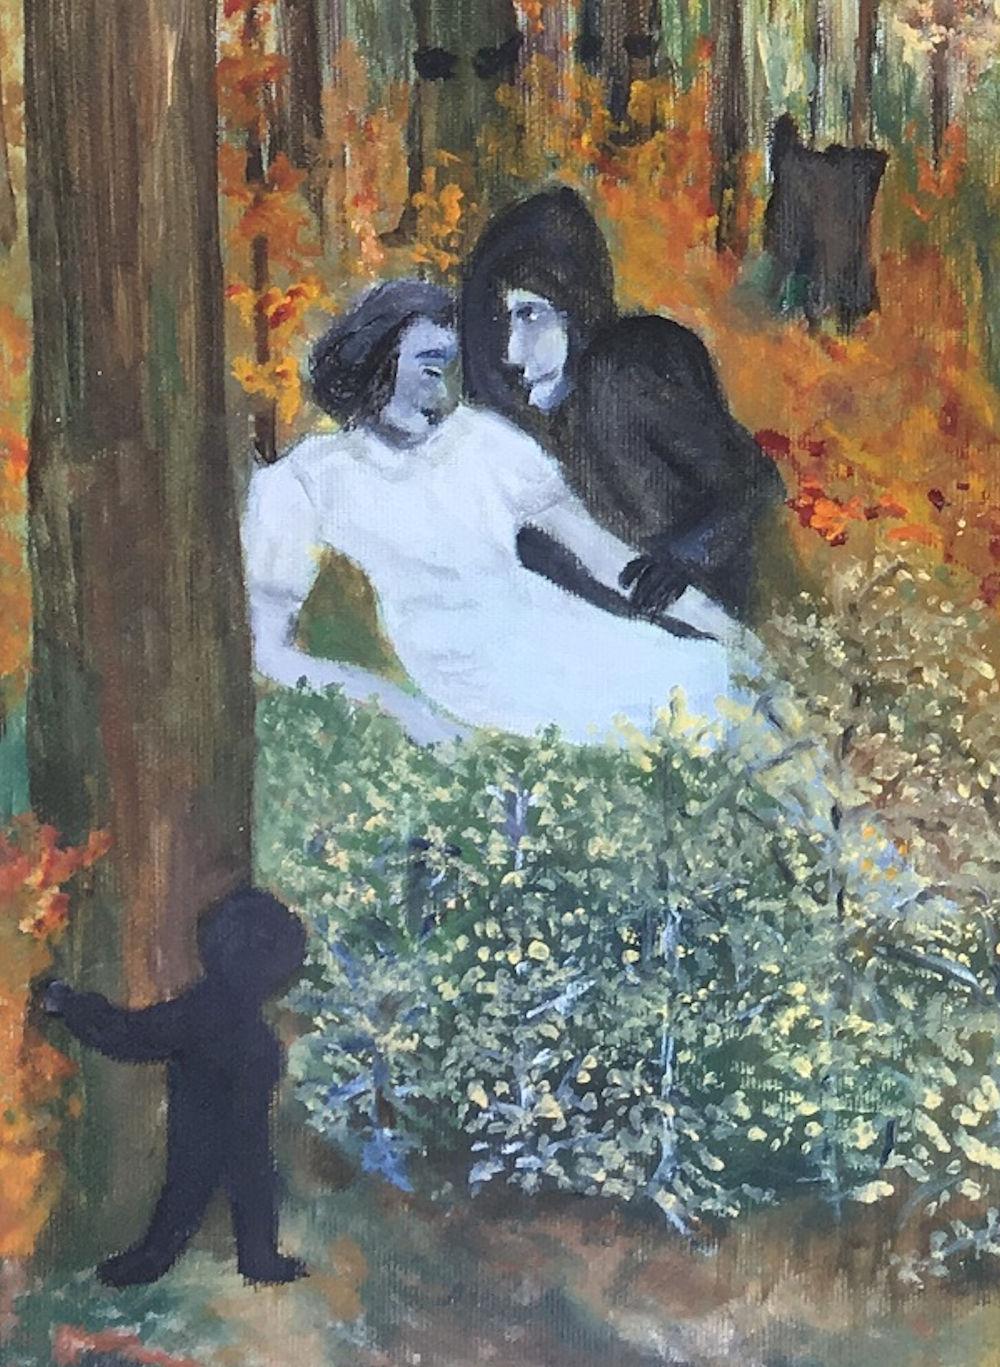 Peinture du peintre danois Bente Ørum 2017.

Marcher dans les bois est agréable. S'asseoir peut être excitant, mais tout n'est pas aussi paisible que cela pourrait l'être. 

À propos de l'artiste :
Les peintures de Bente Ørum sont figuratives,